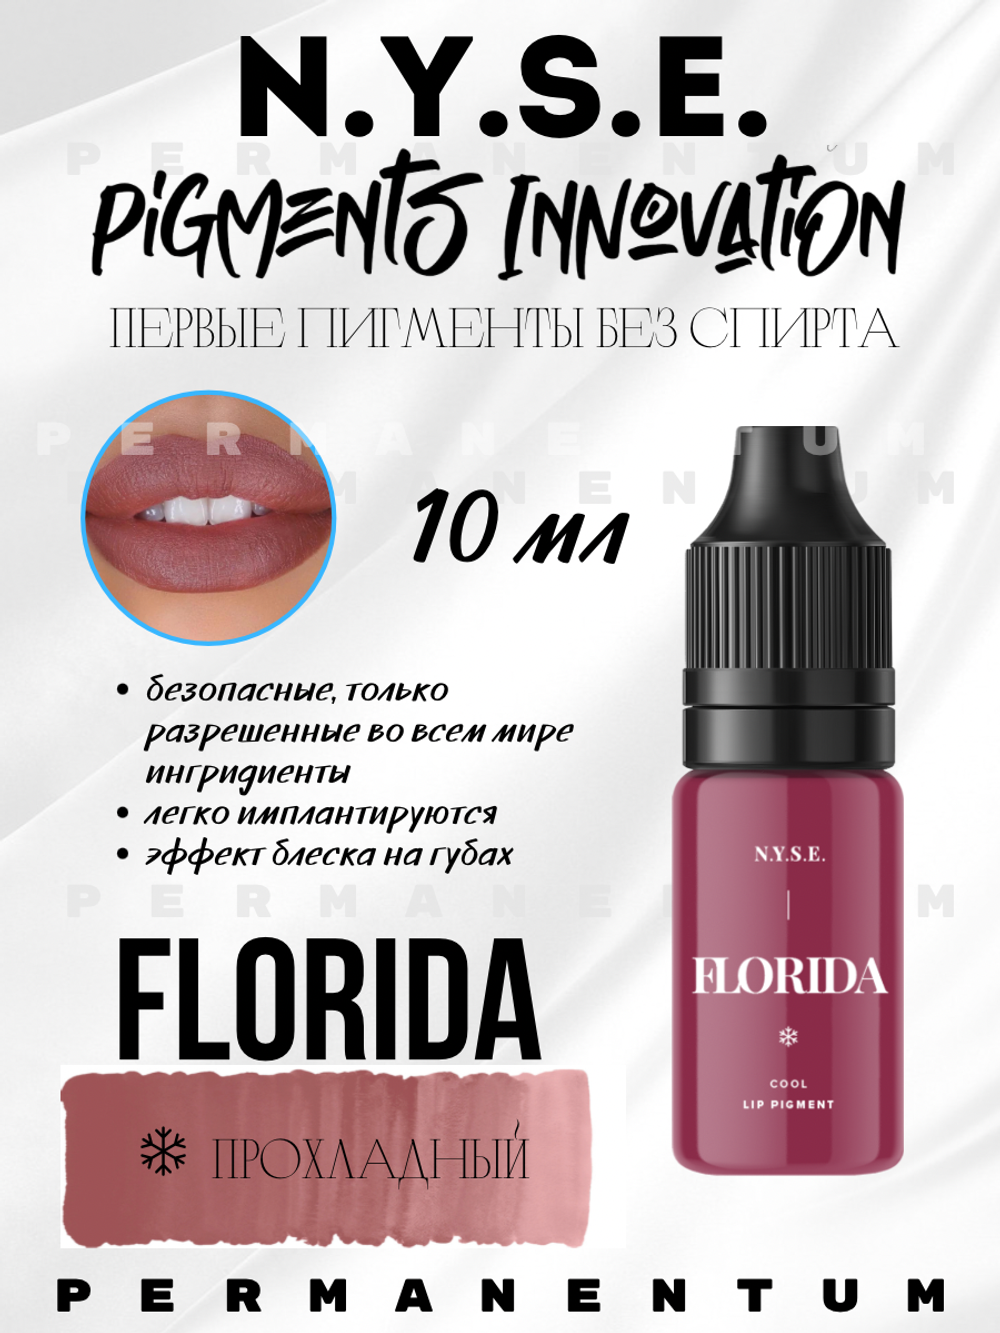 Пигмент для губ INNOVATION "FLORIDA" от Алёны Пестовой